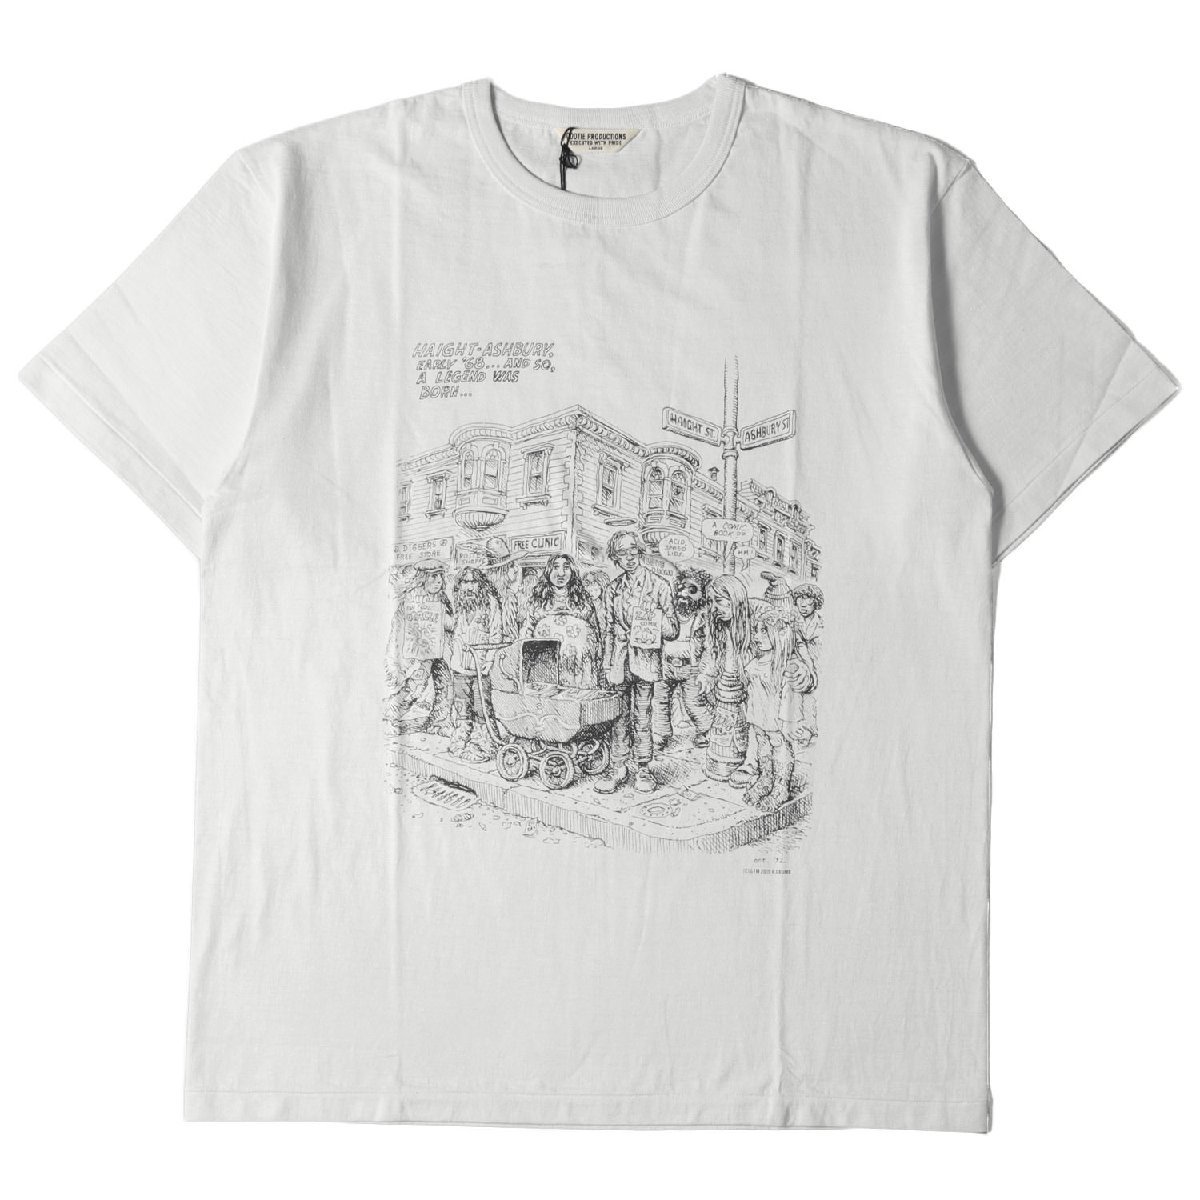 新品 COOTIE クーティー Tシャツ サイズ:L 19SS Robert Crumb イラスト グラフィック Print S/S Tee HAIGHT ASHBURY ホワイトスモーク